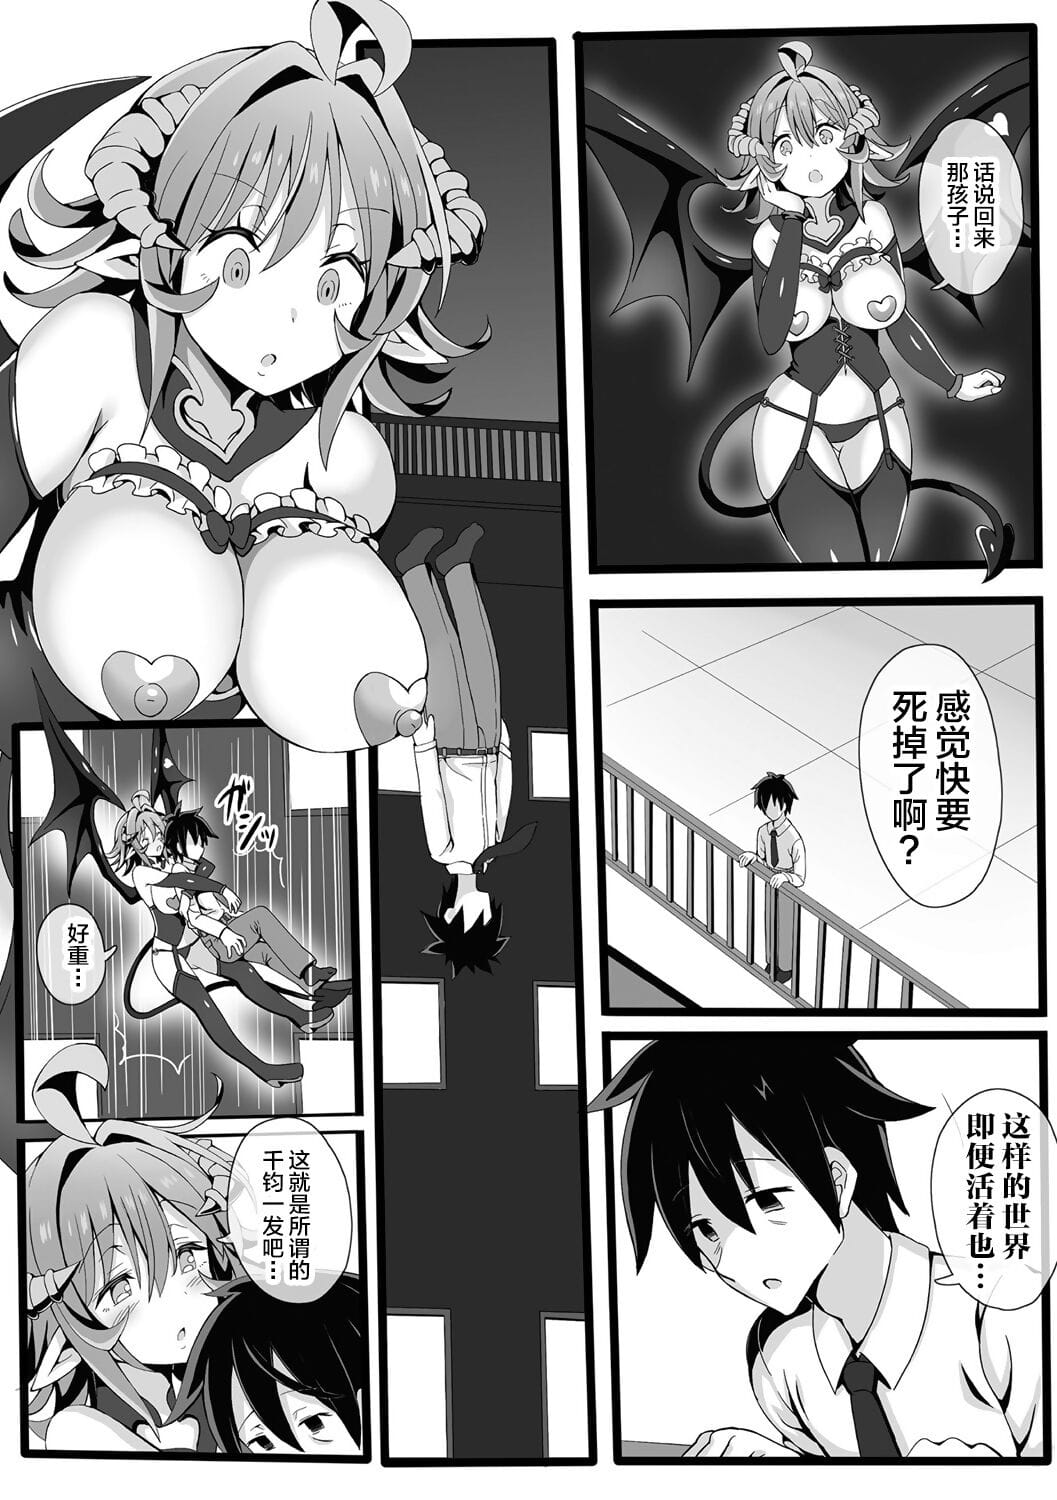 Bessatsu Comic Unreal Jingai Onee-san ni Yoru Amayakashi Sakusei Hen Vol. 1 page 1